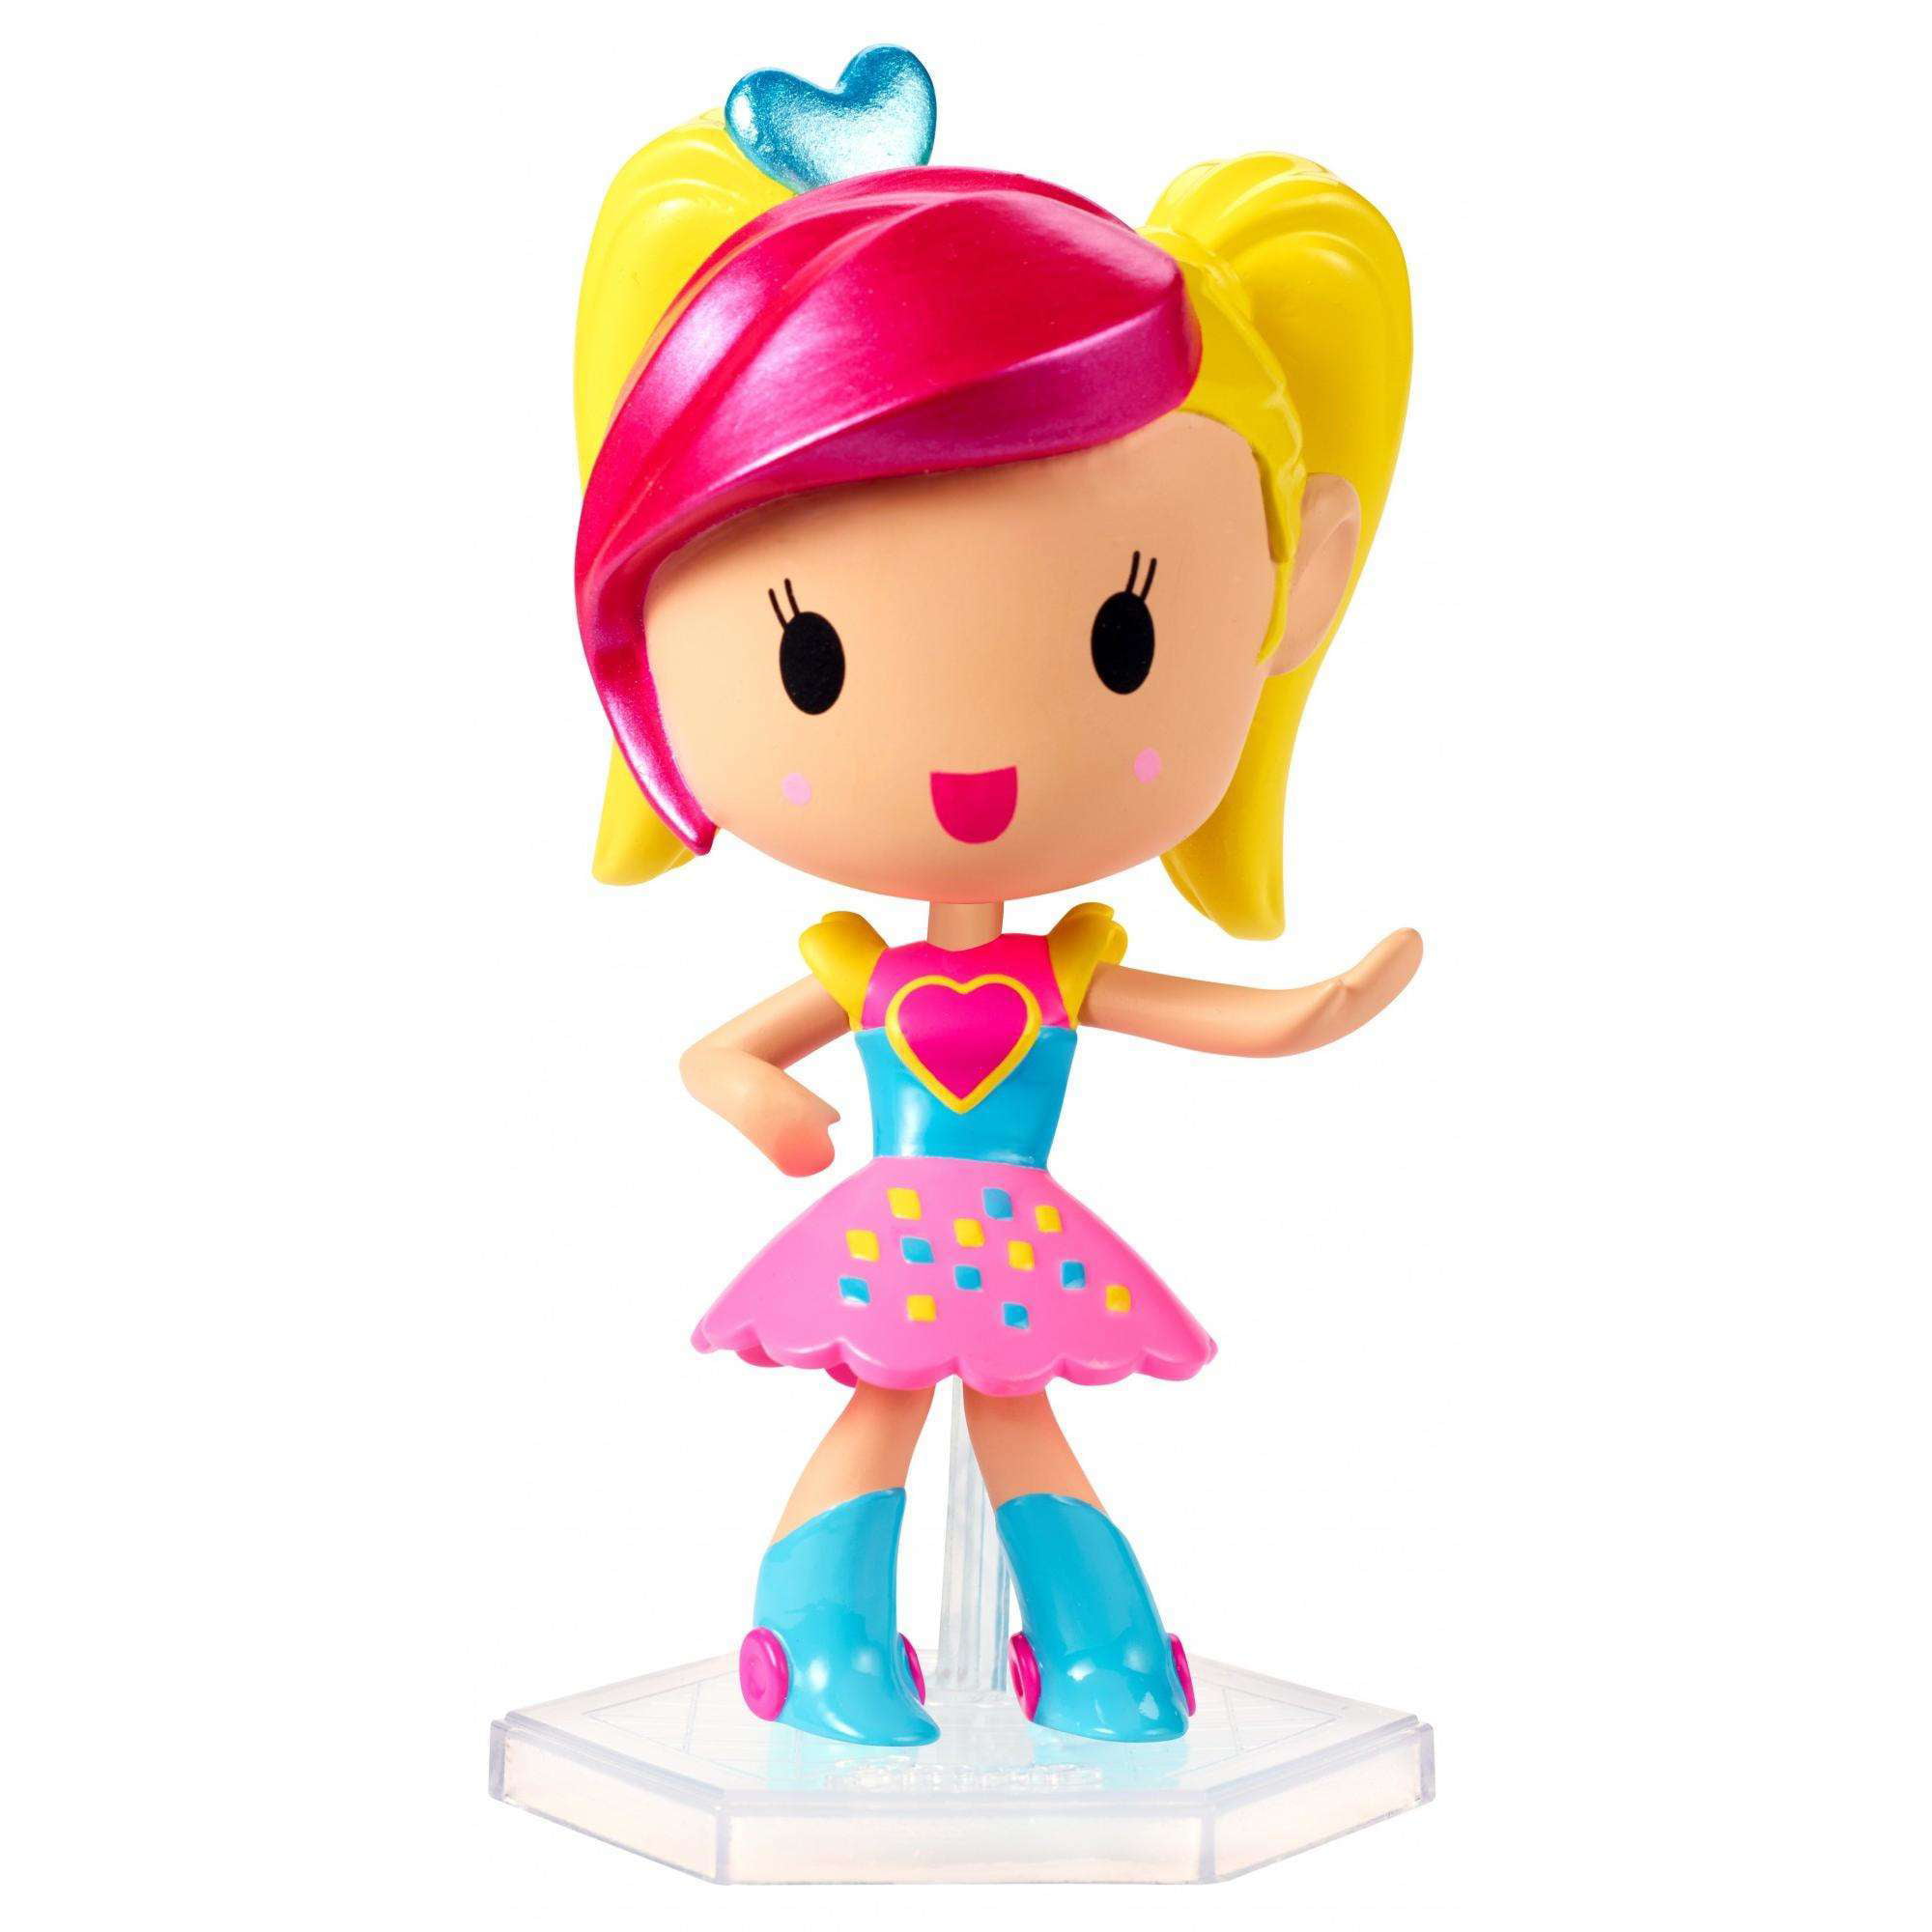 Мини куклы барби. Куклы Барби виртуальный мир. Барби виртуальный мир Барби. Игрушки Барби виртуальный мир. Популярные игрушки для девочек.